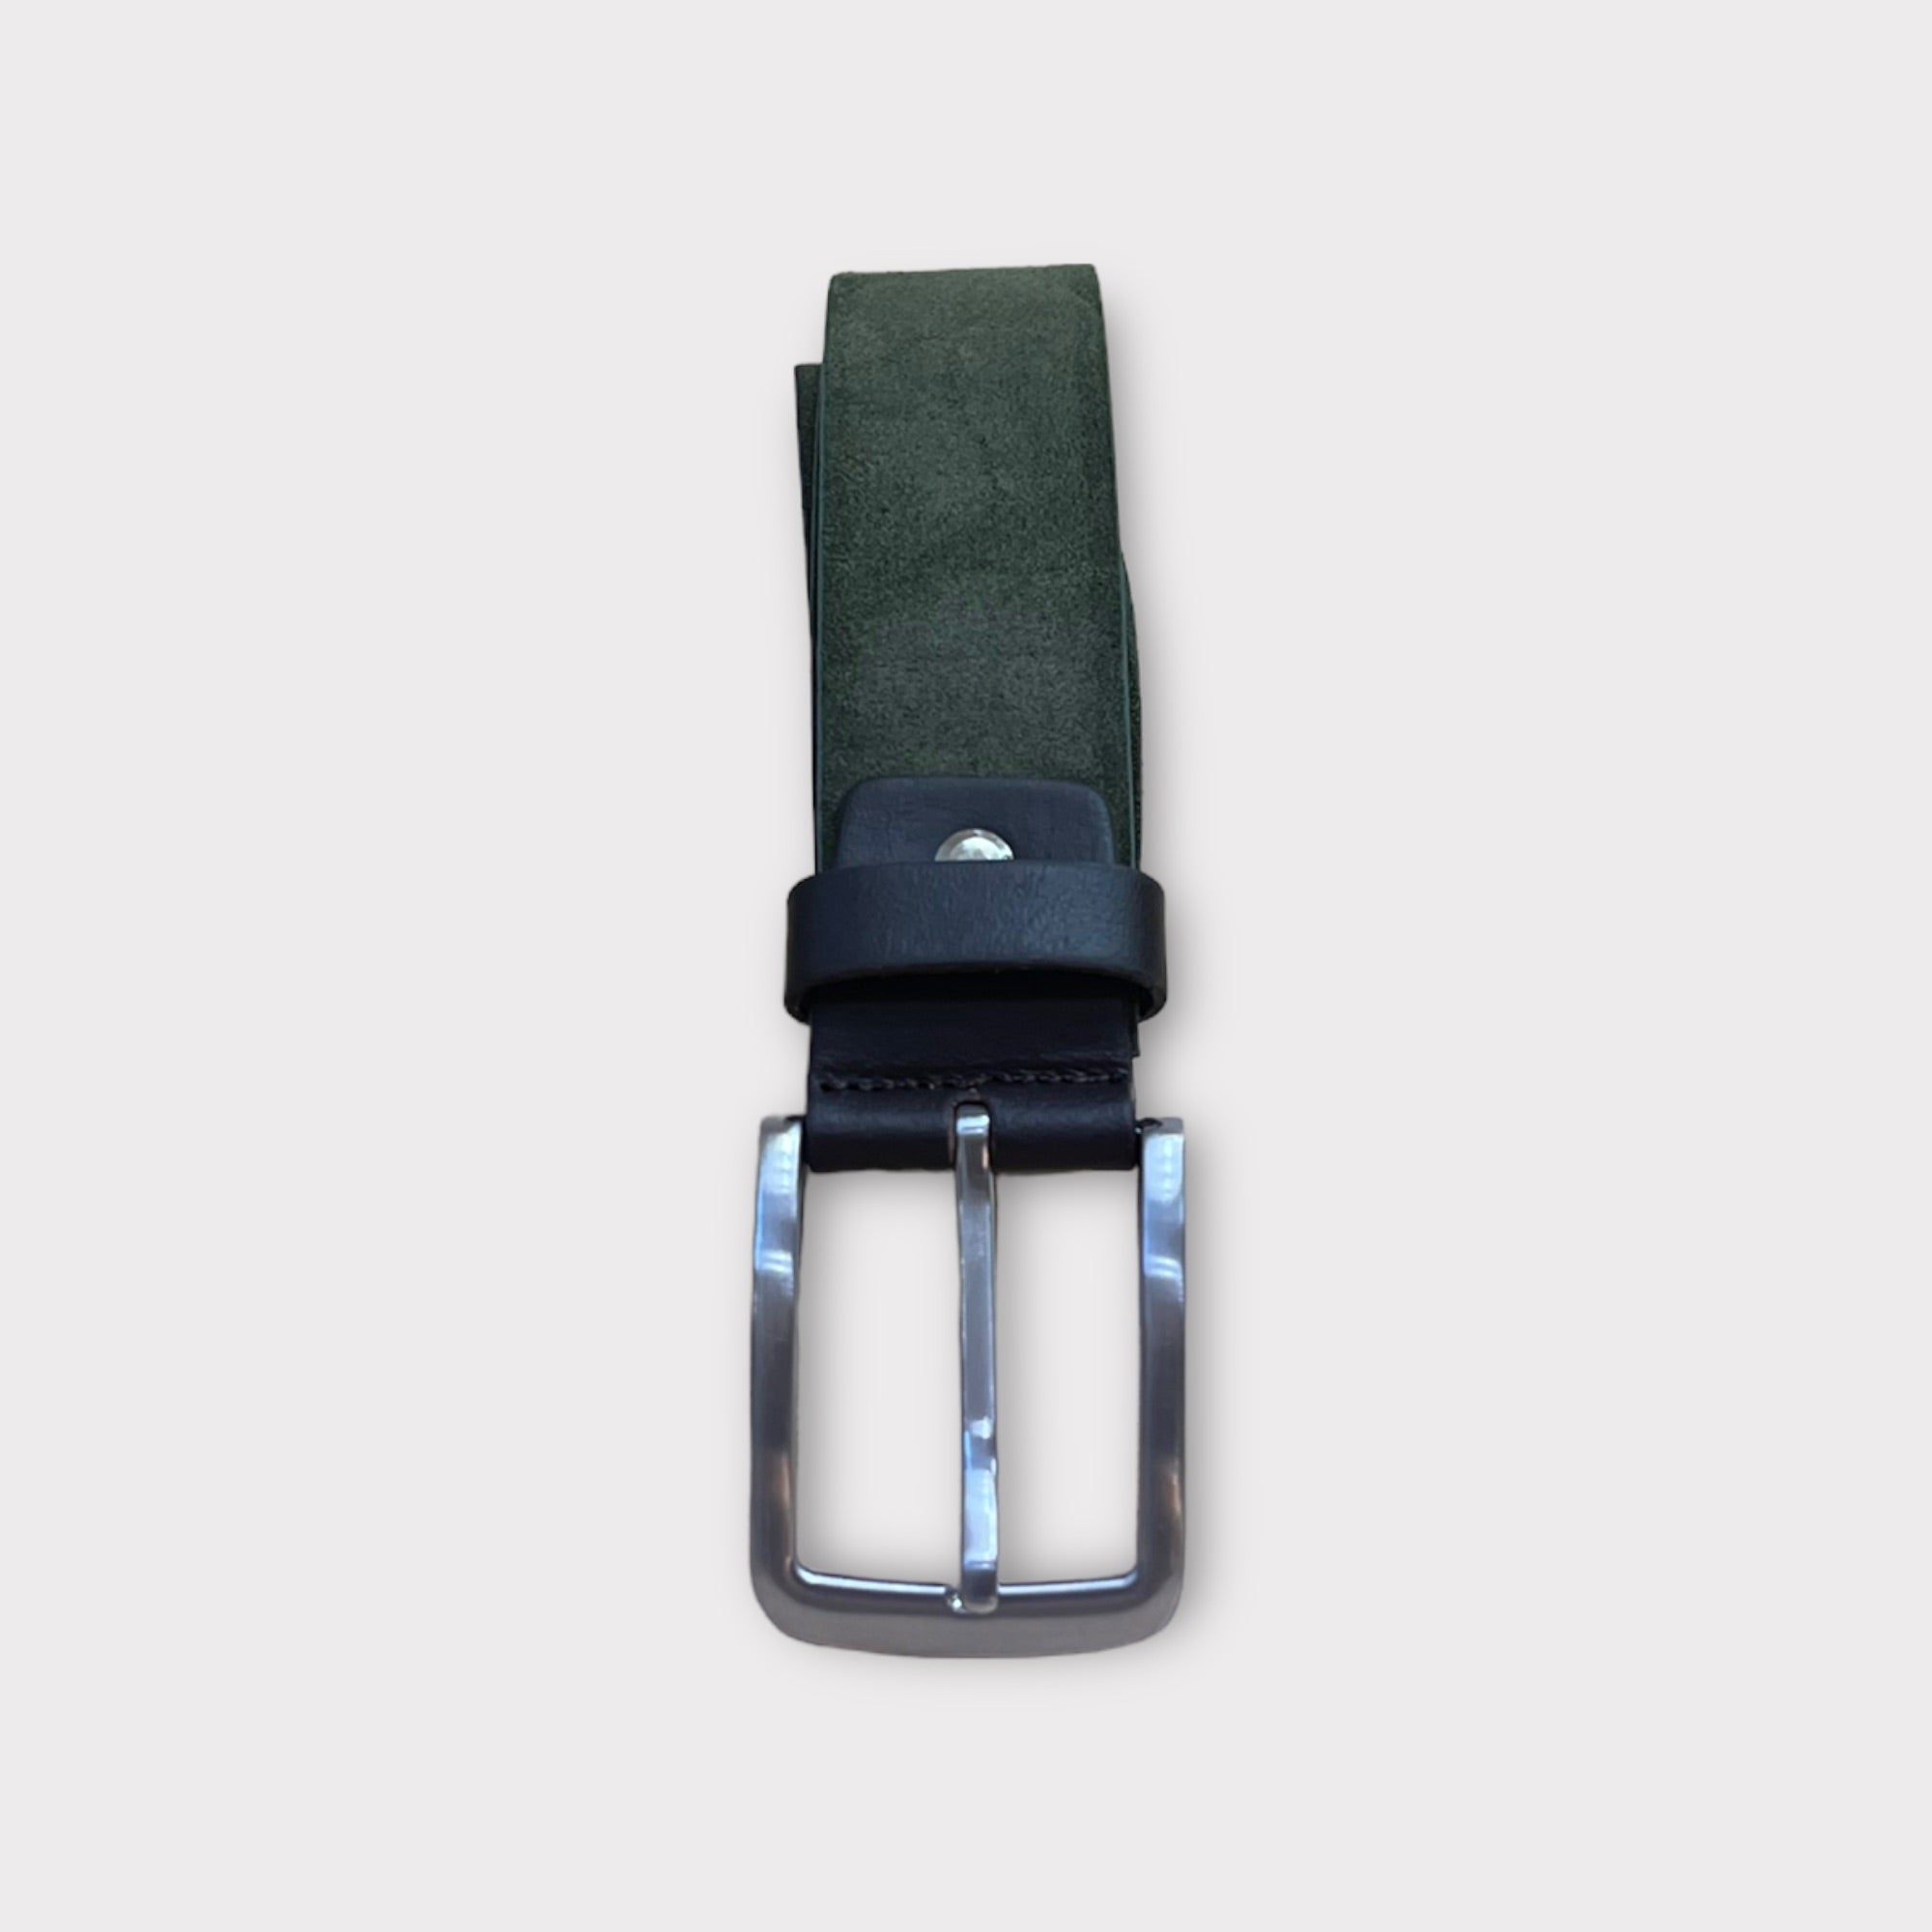 Cintura 035mm camoscio in pelle militare  con inserti in cuoio